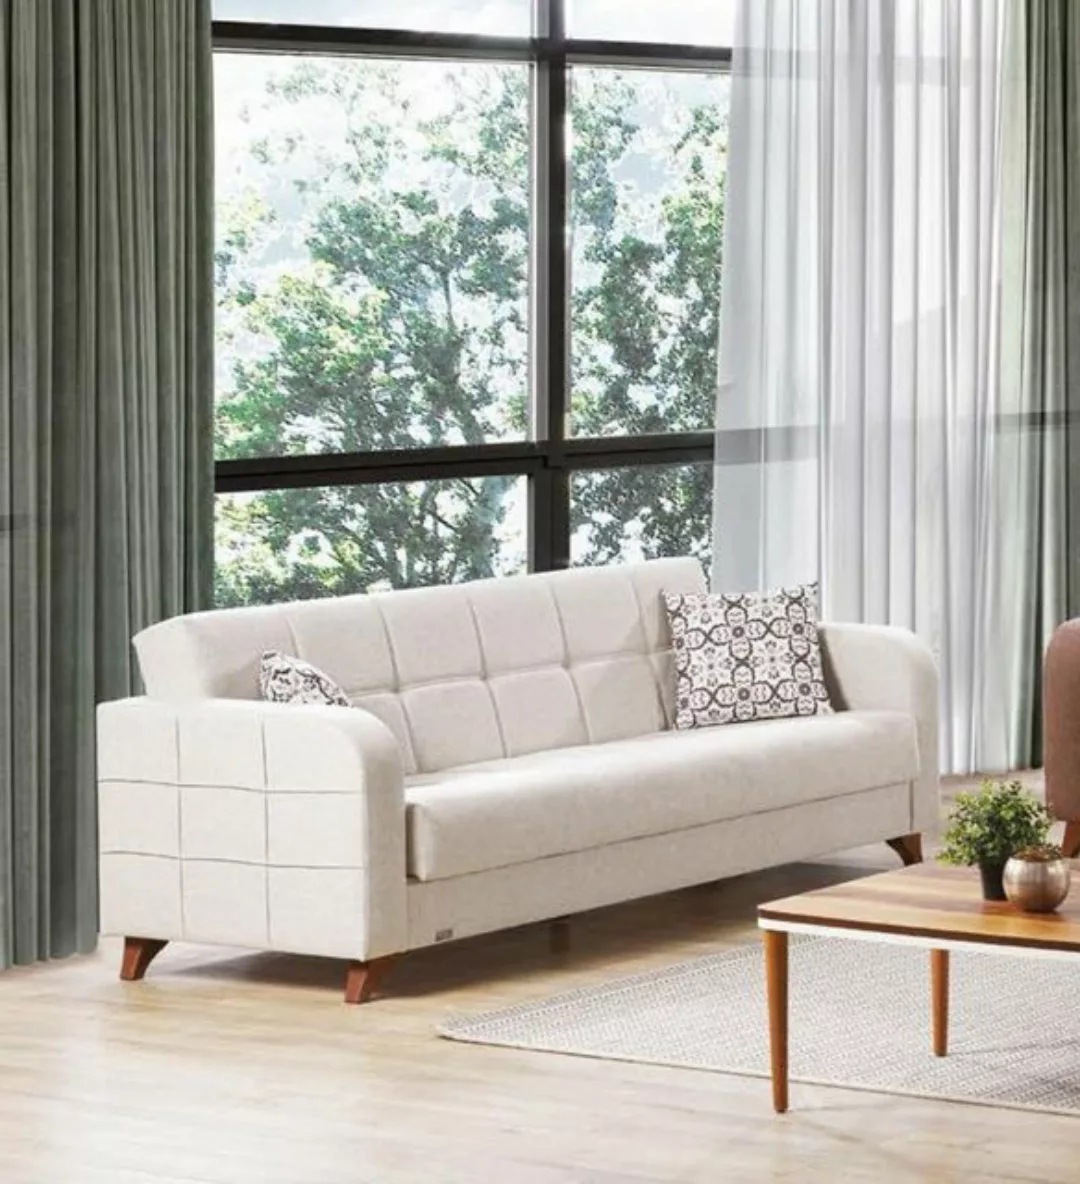 JVmoebel Sofa Dreisitzer Couch Polster Sofa 3 Sitz Sofas Zimmer Möbel Neu D günstig online kaufen